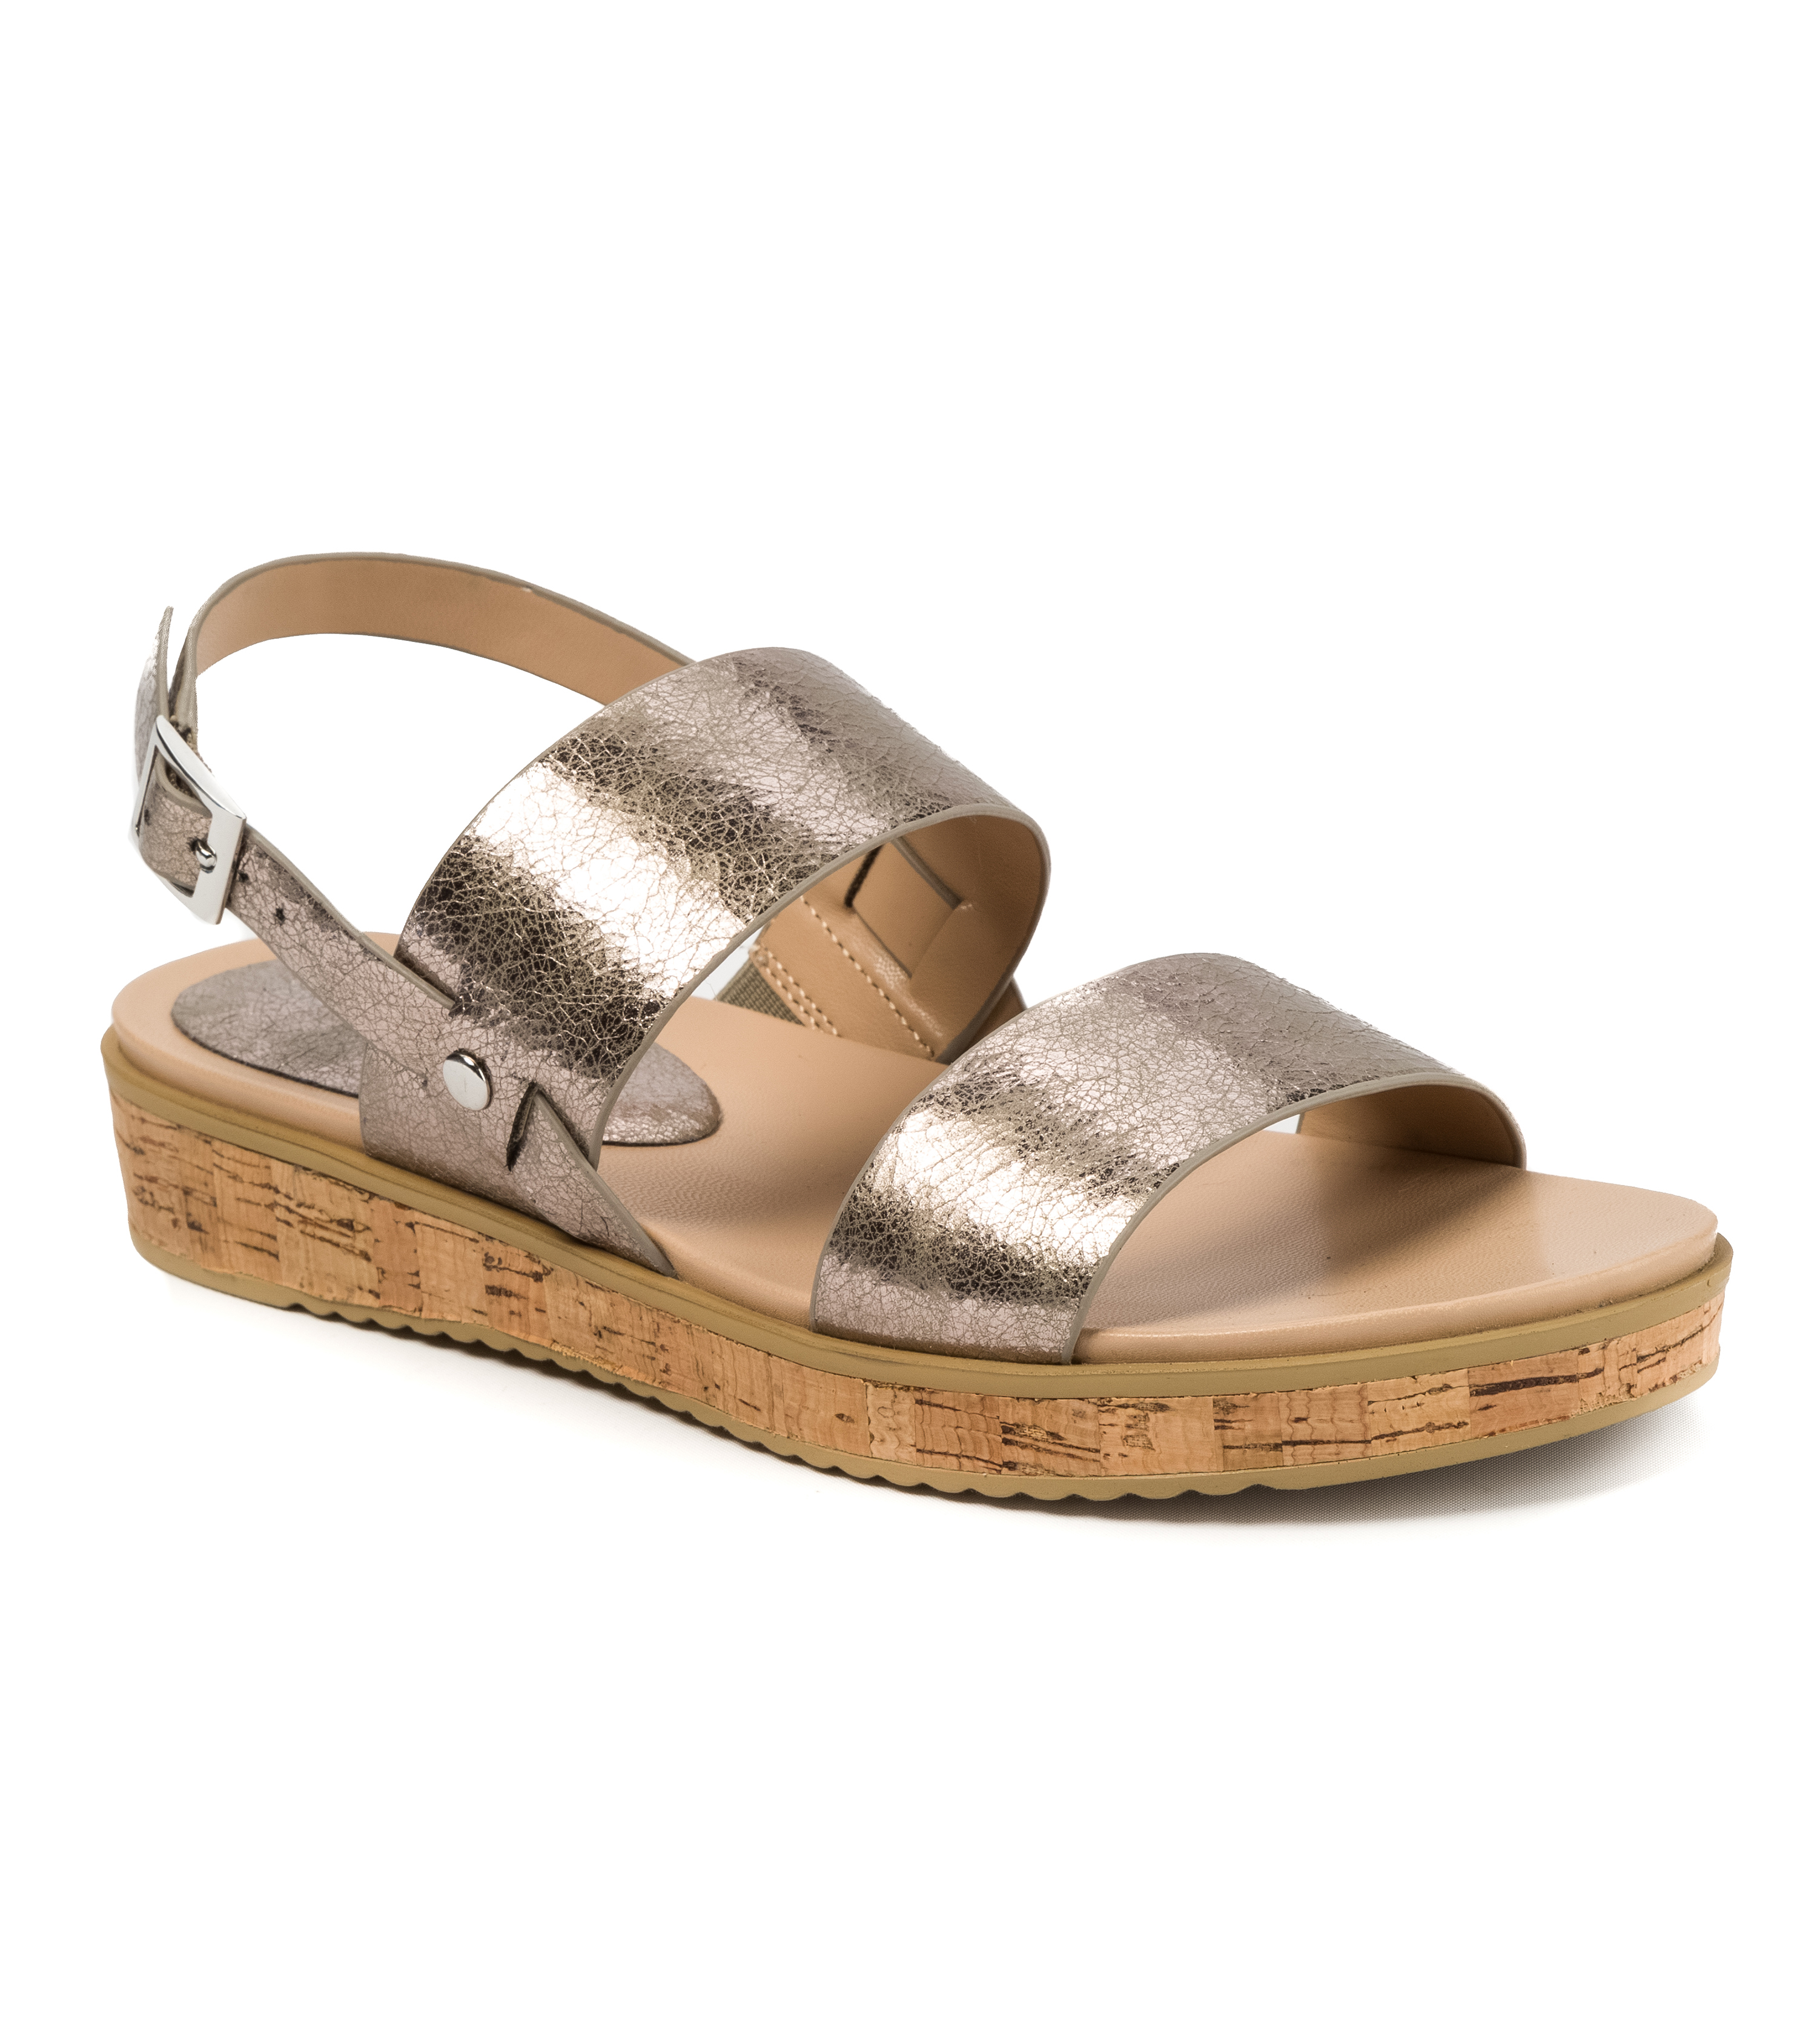 Andrew Geller Henise Women's Sandals & Flip Flops Old Silver | eBay